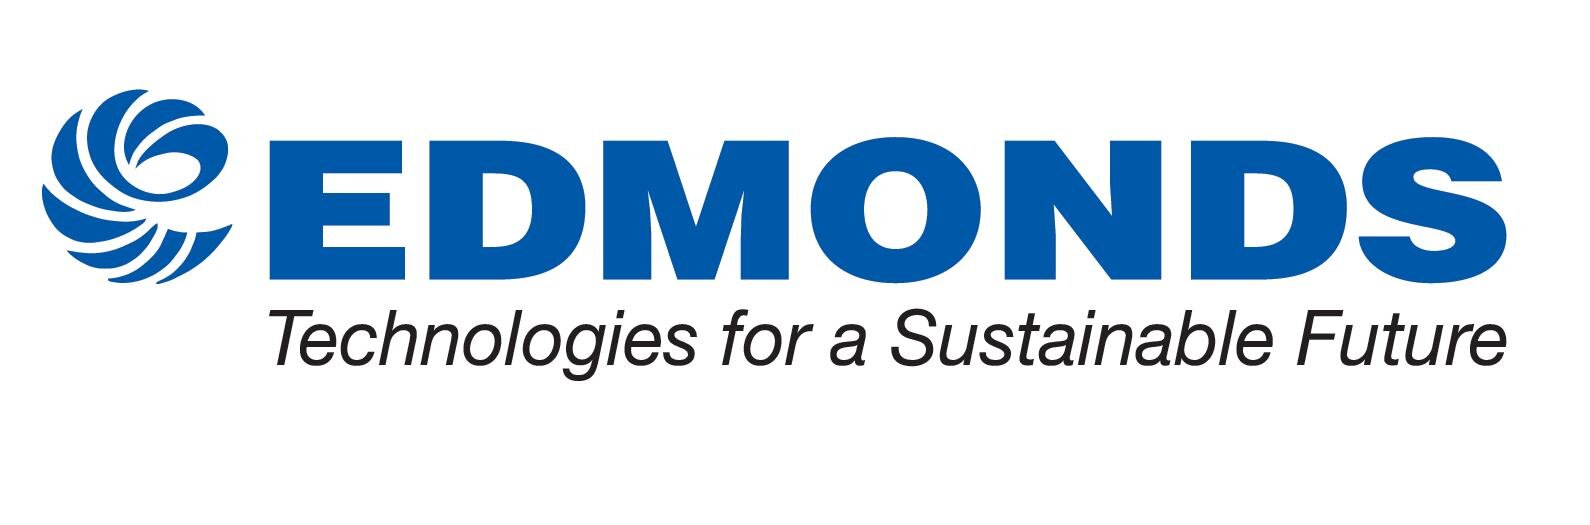 Edmonds logo.jpg